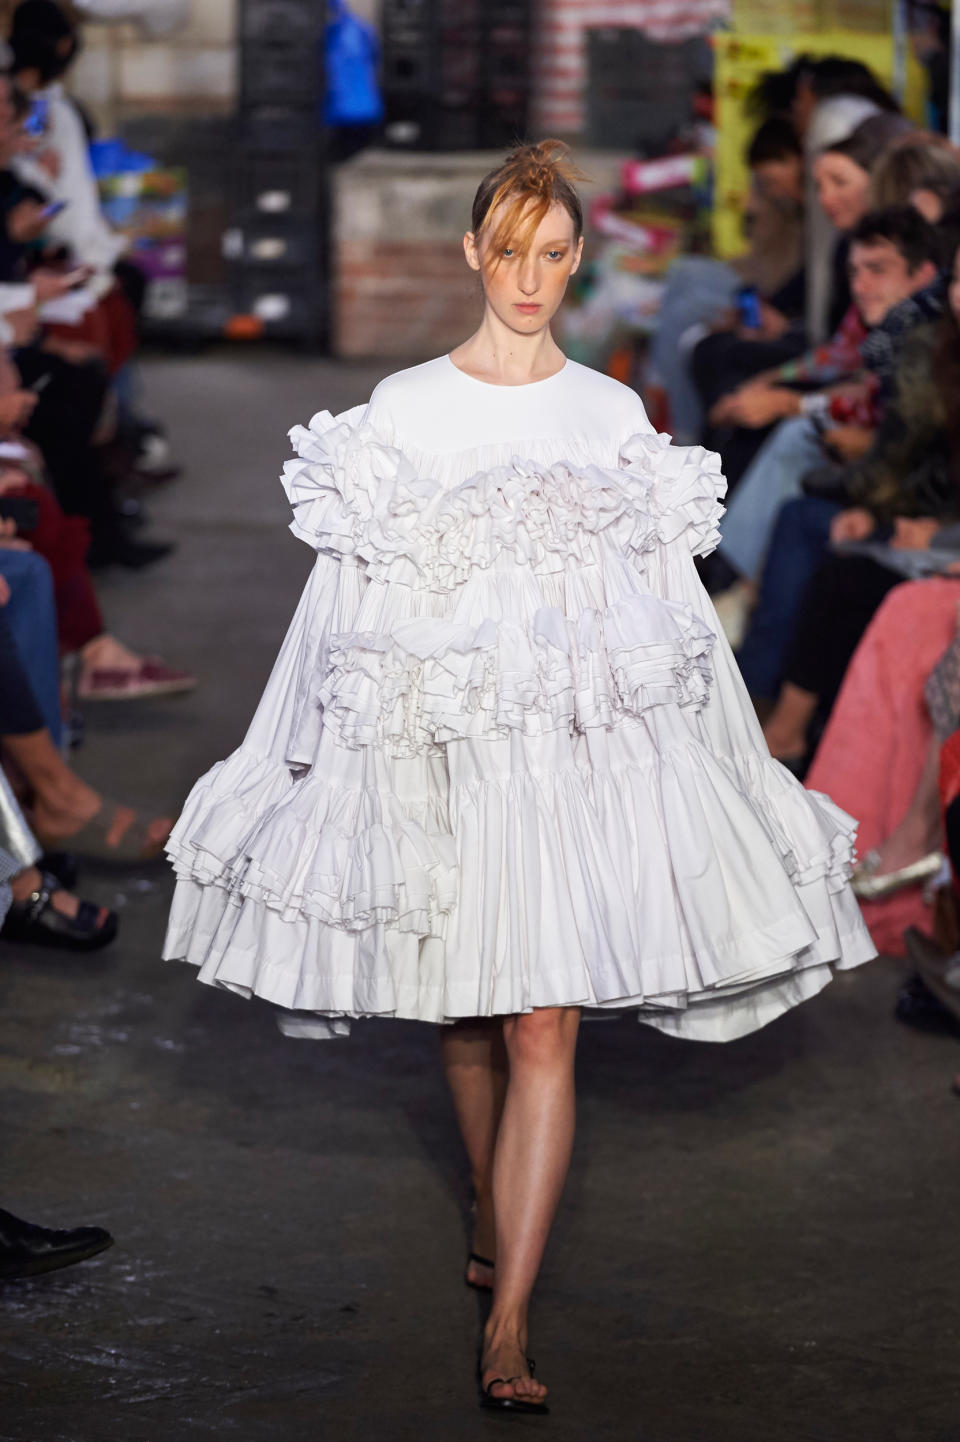 <p>Bei Molly Goddard sorgte dieser Look für besondere Aufmerksamkeit. Ein weißes Babydoll-Kleid mit mehreren Lagen aus Rüschen-Volants. Ob dieser Style sich auf der Straße durchsetzen wird, ist allerdings fraglich. Völlig verrückt ist er allemal. (Bild: Getty Images) </p>